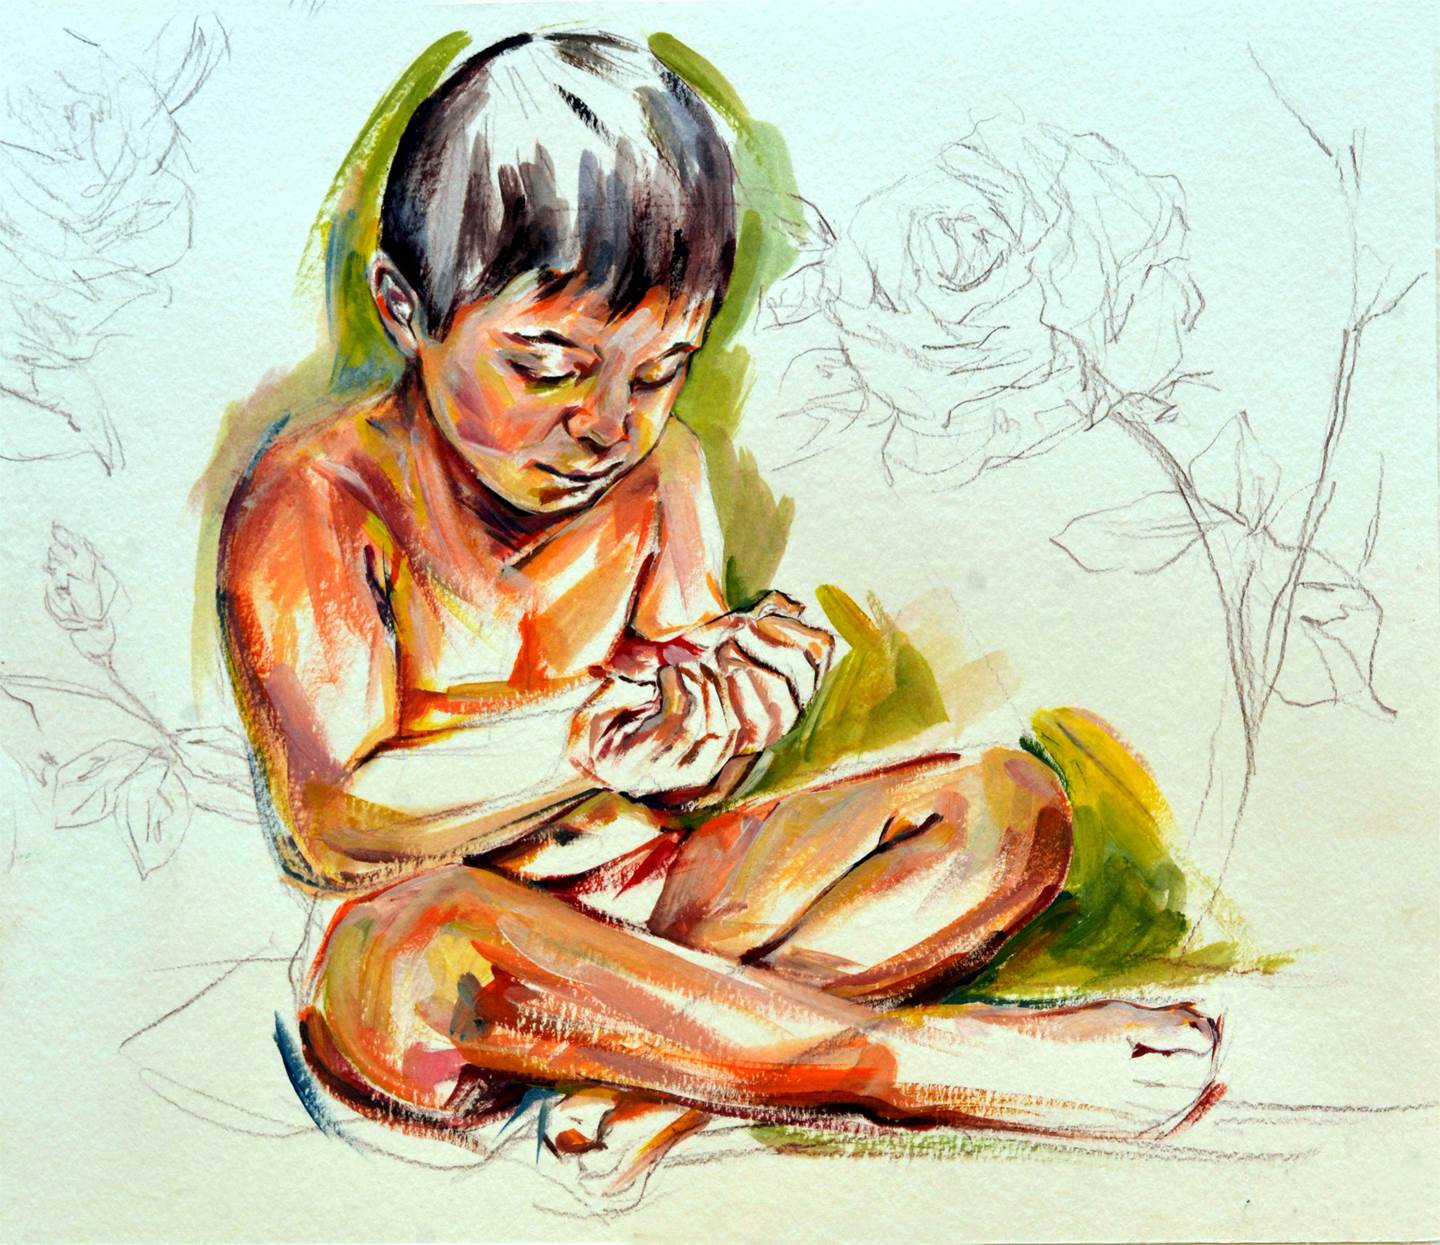 Pétalas. À espera do milagre., original Human Figure Acrylic Painting by Elizabeth  Leite